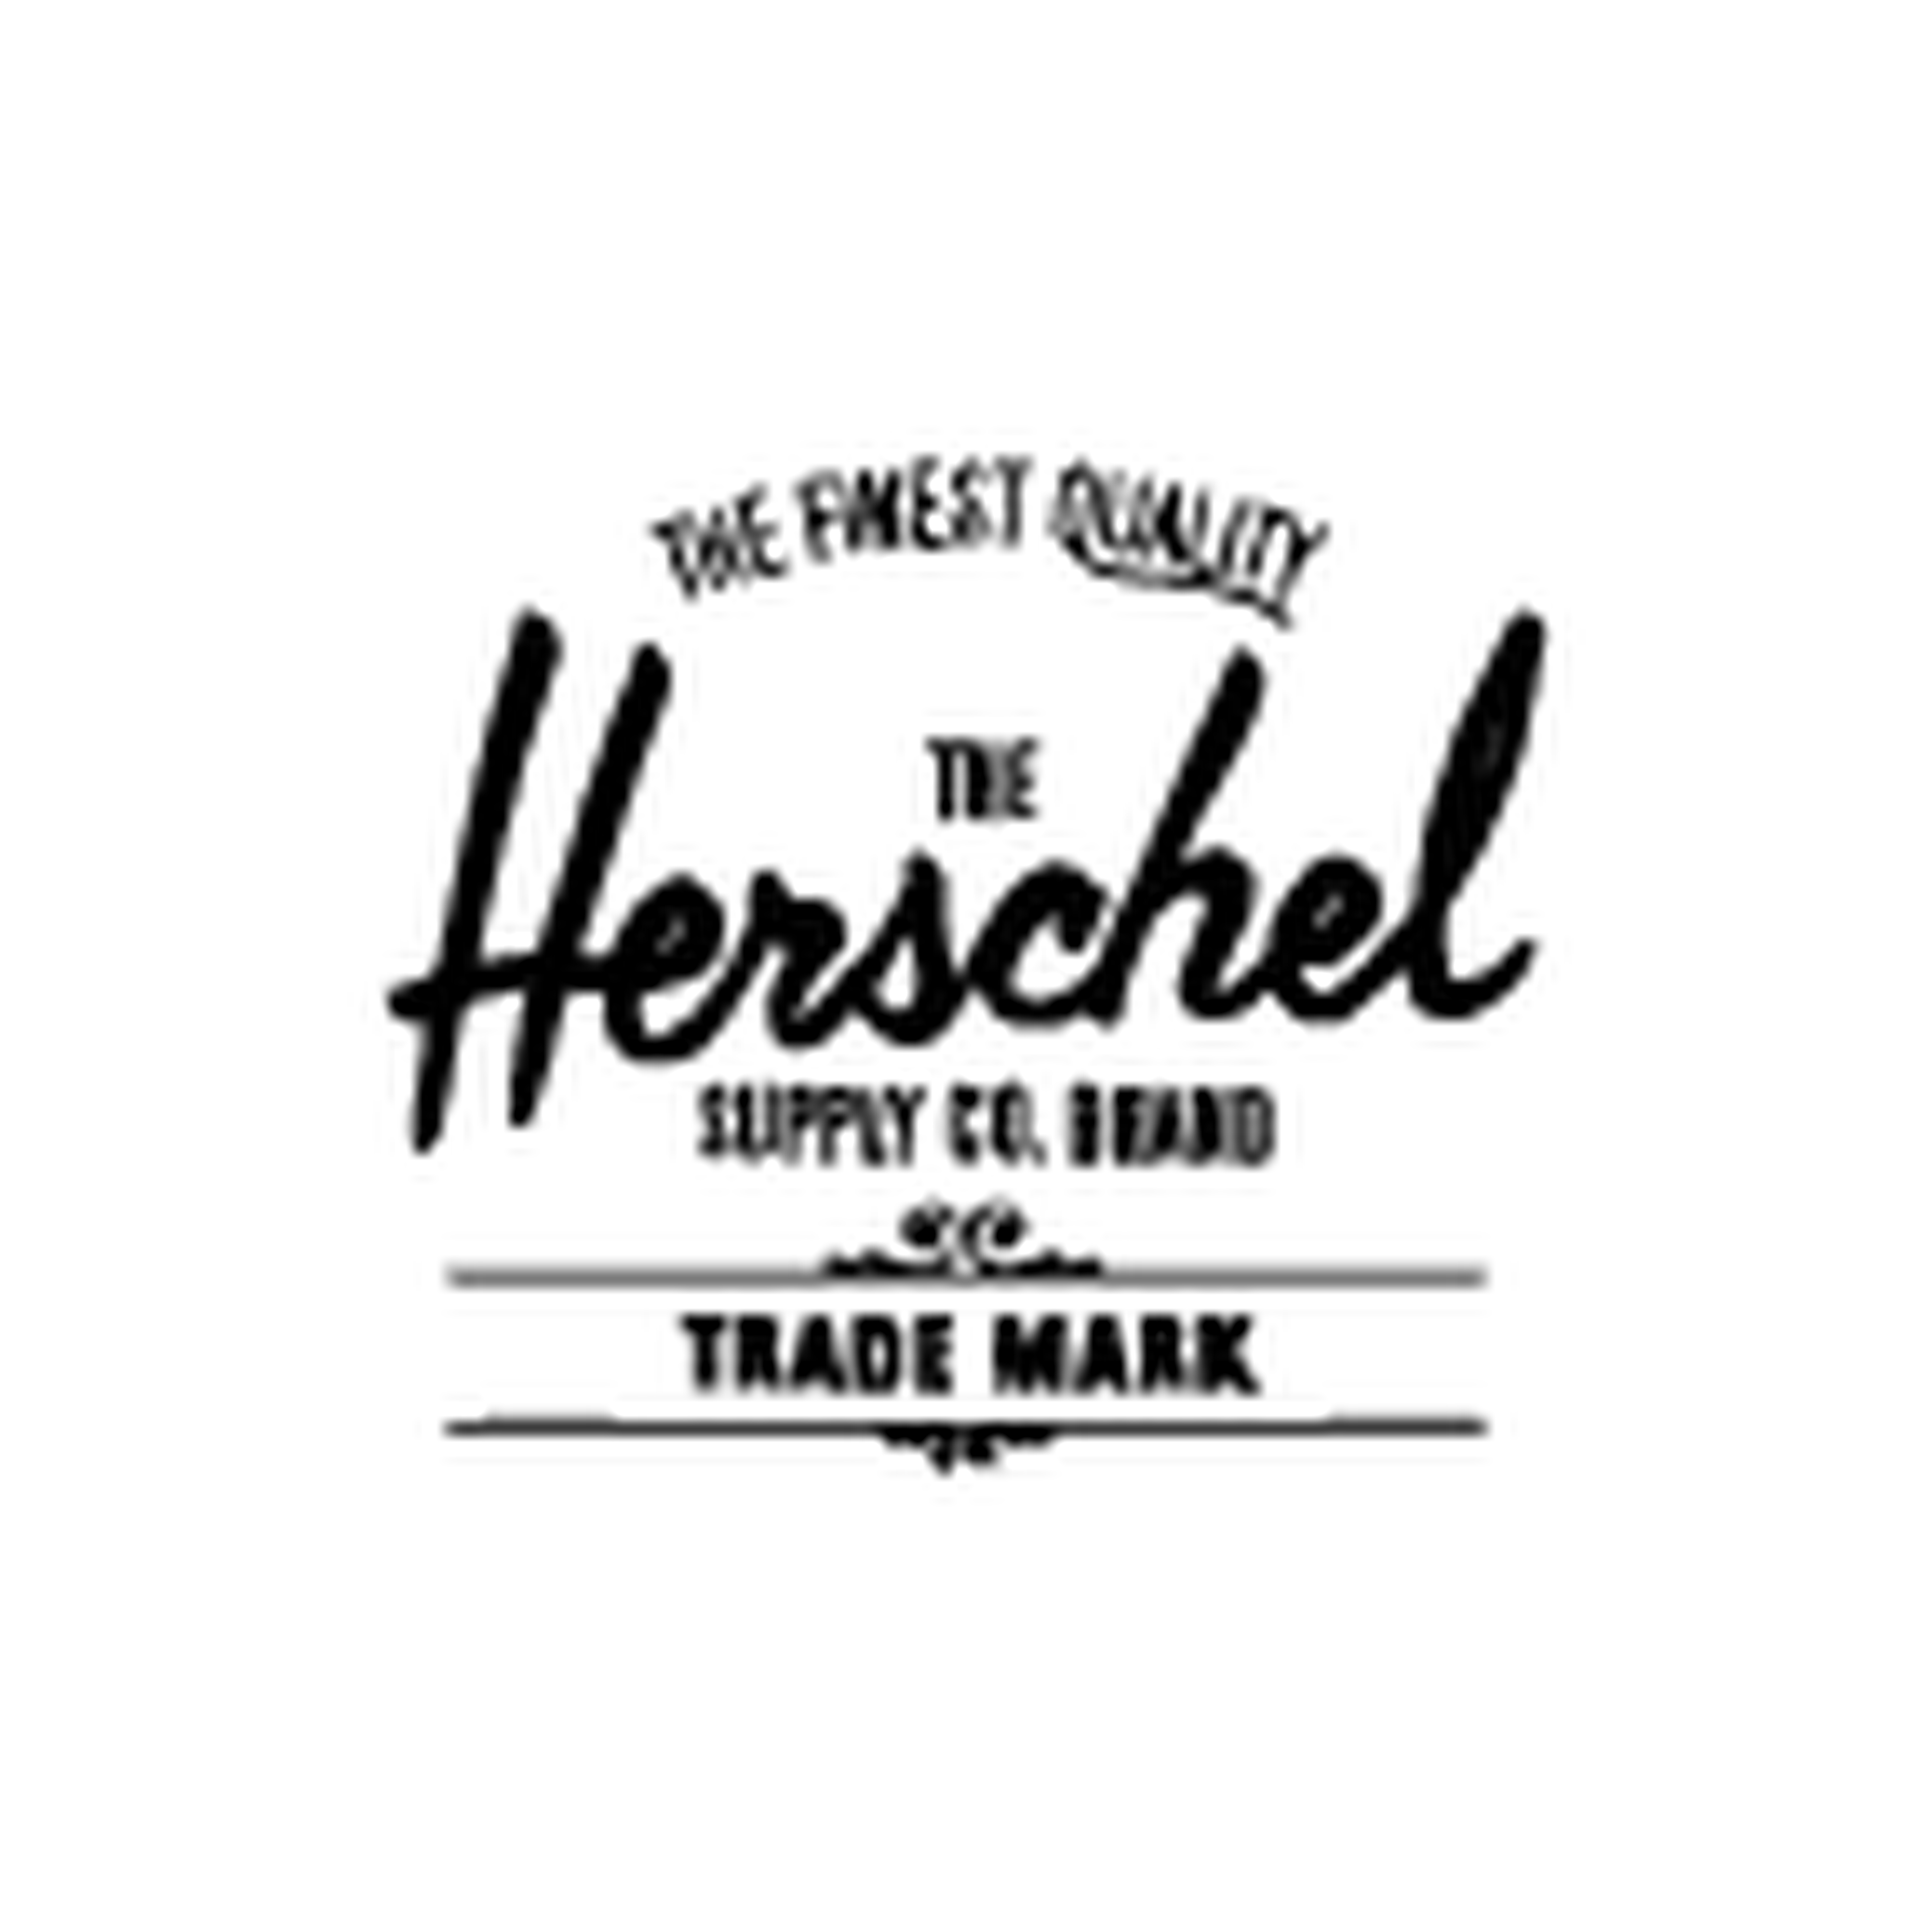 Herschel